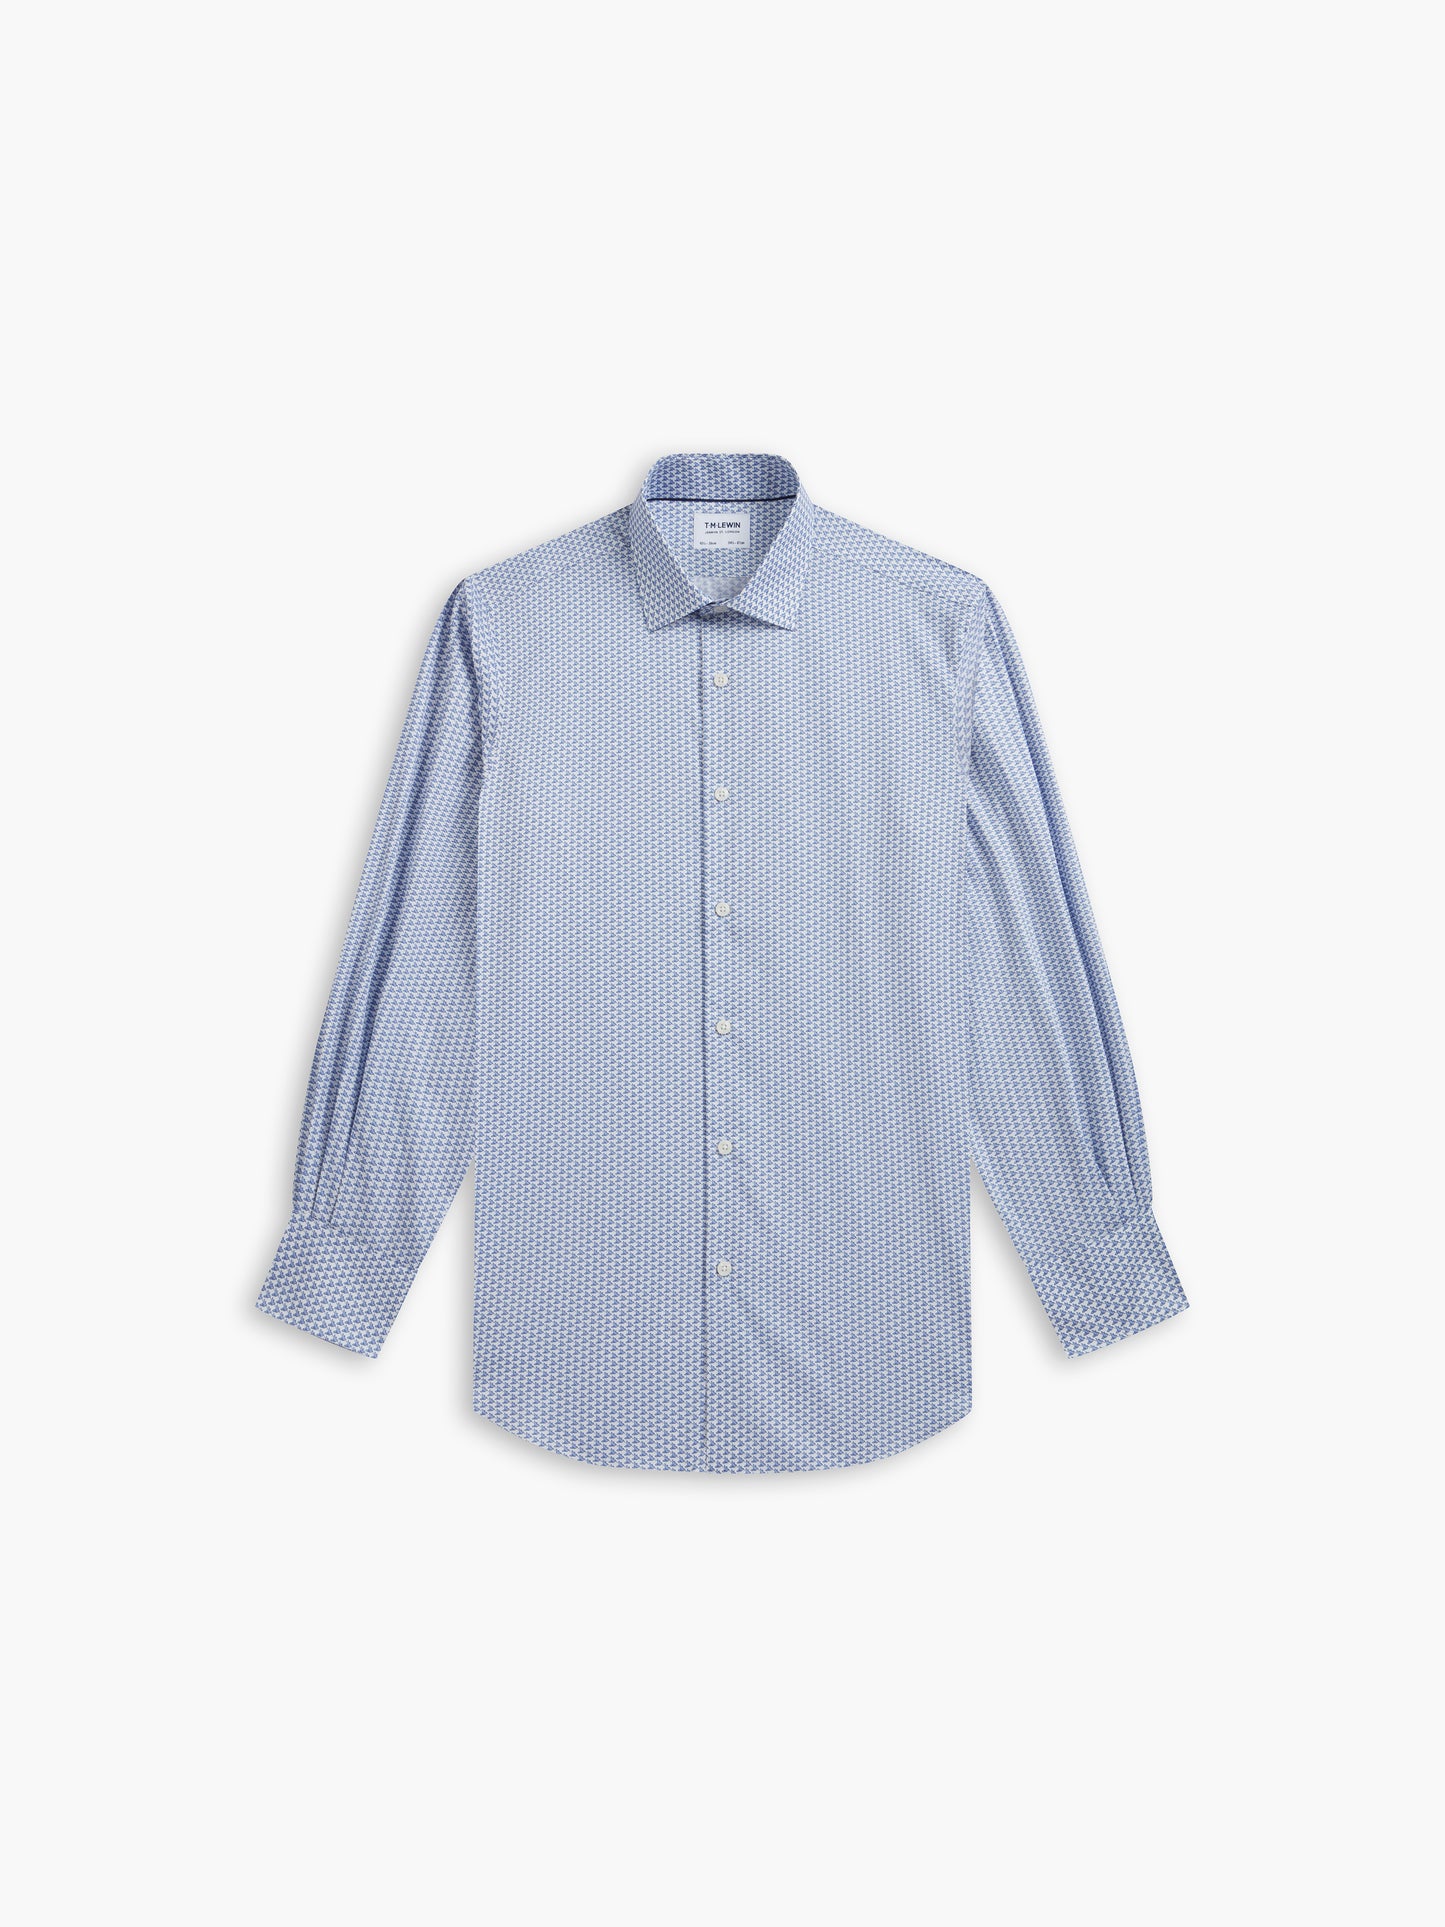 Max Cool Blue Hummingbird Animal Print Twill Slim Fit Single Cuff Classic Collar Shirt